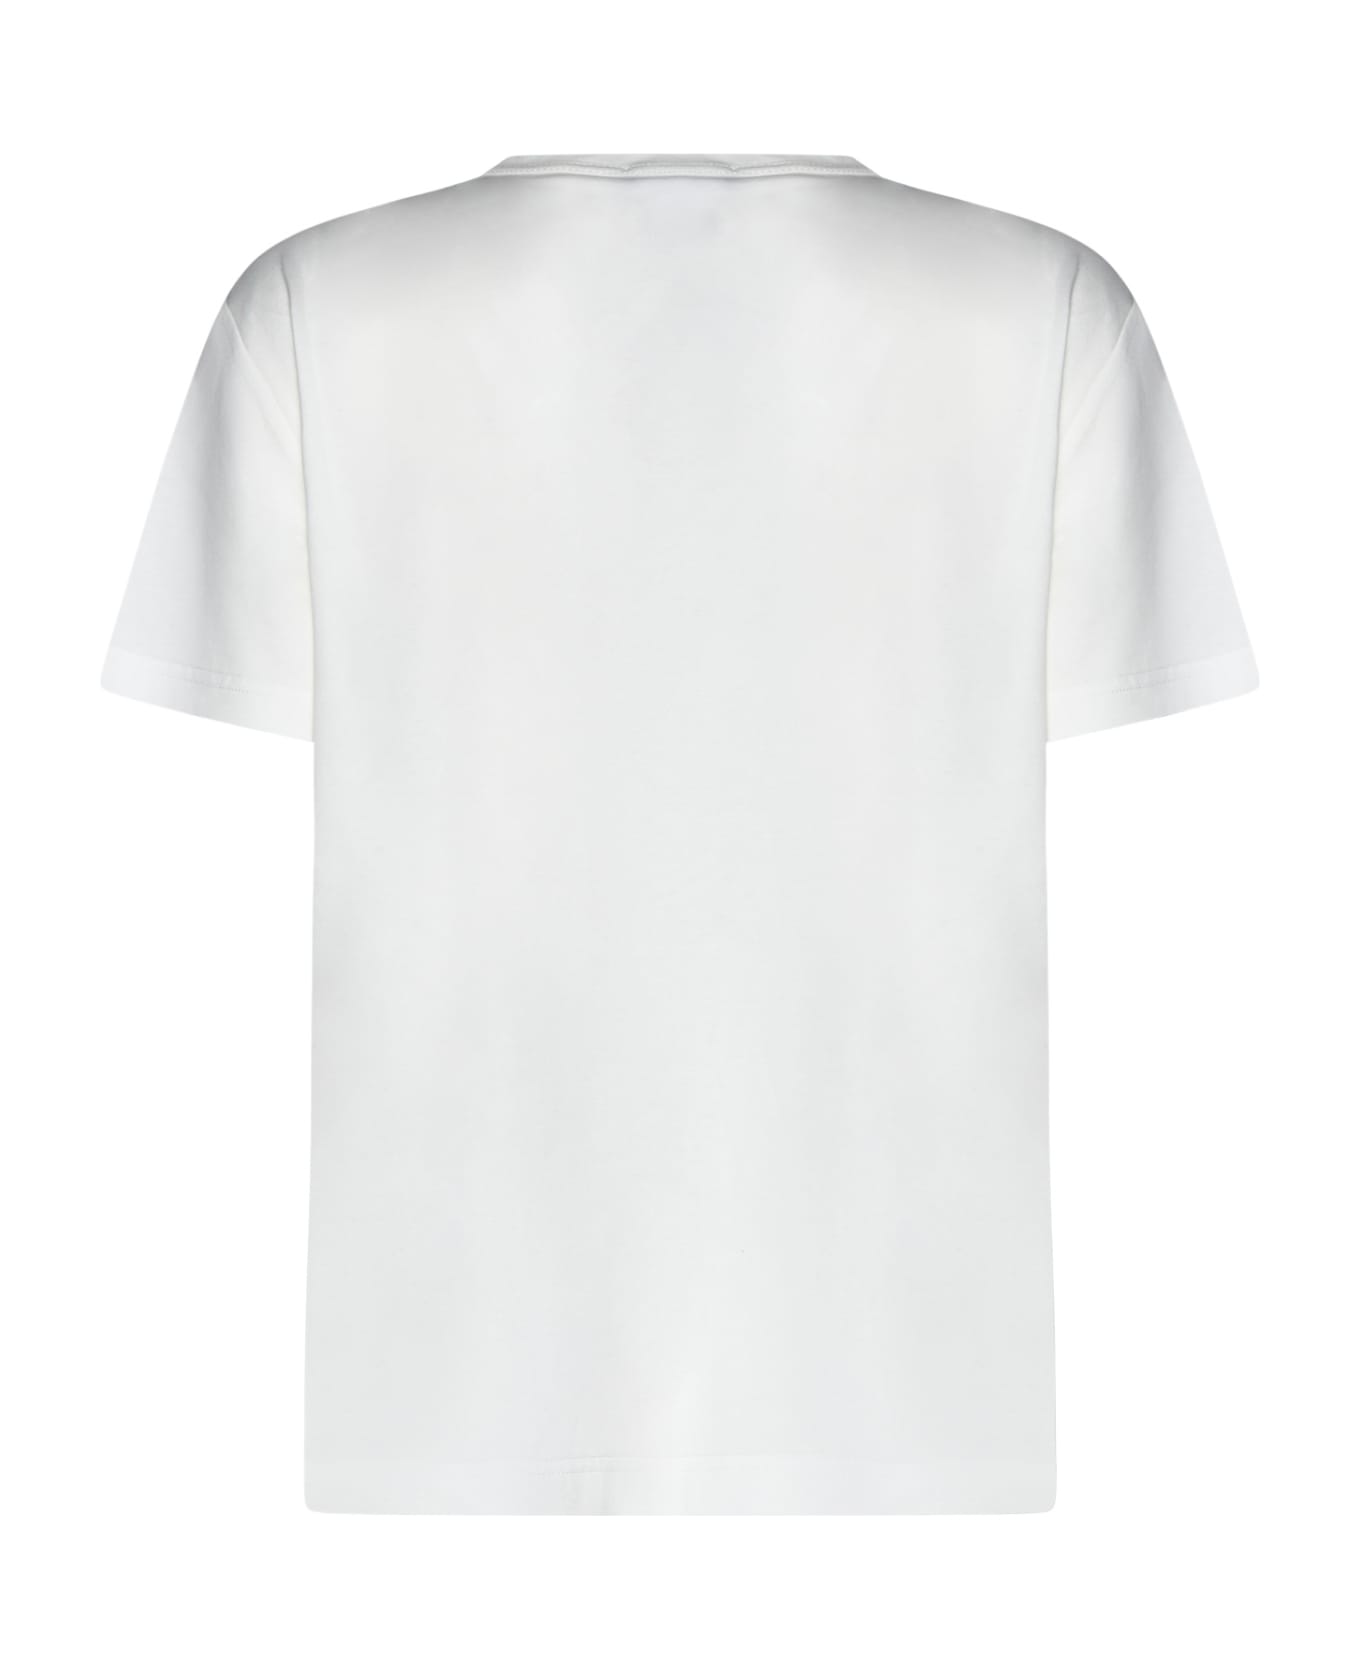 Fabiana Filippi T-Shirt - White